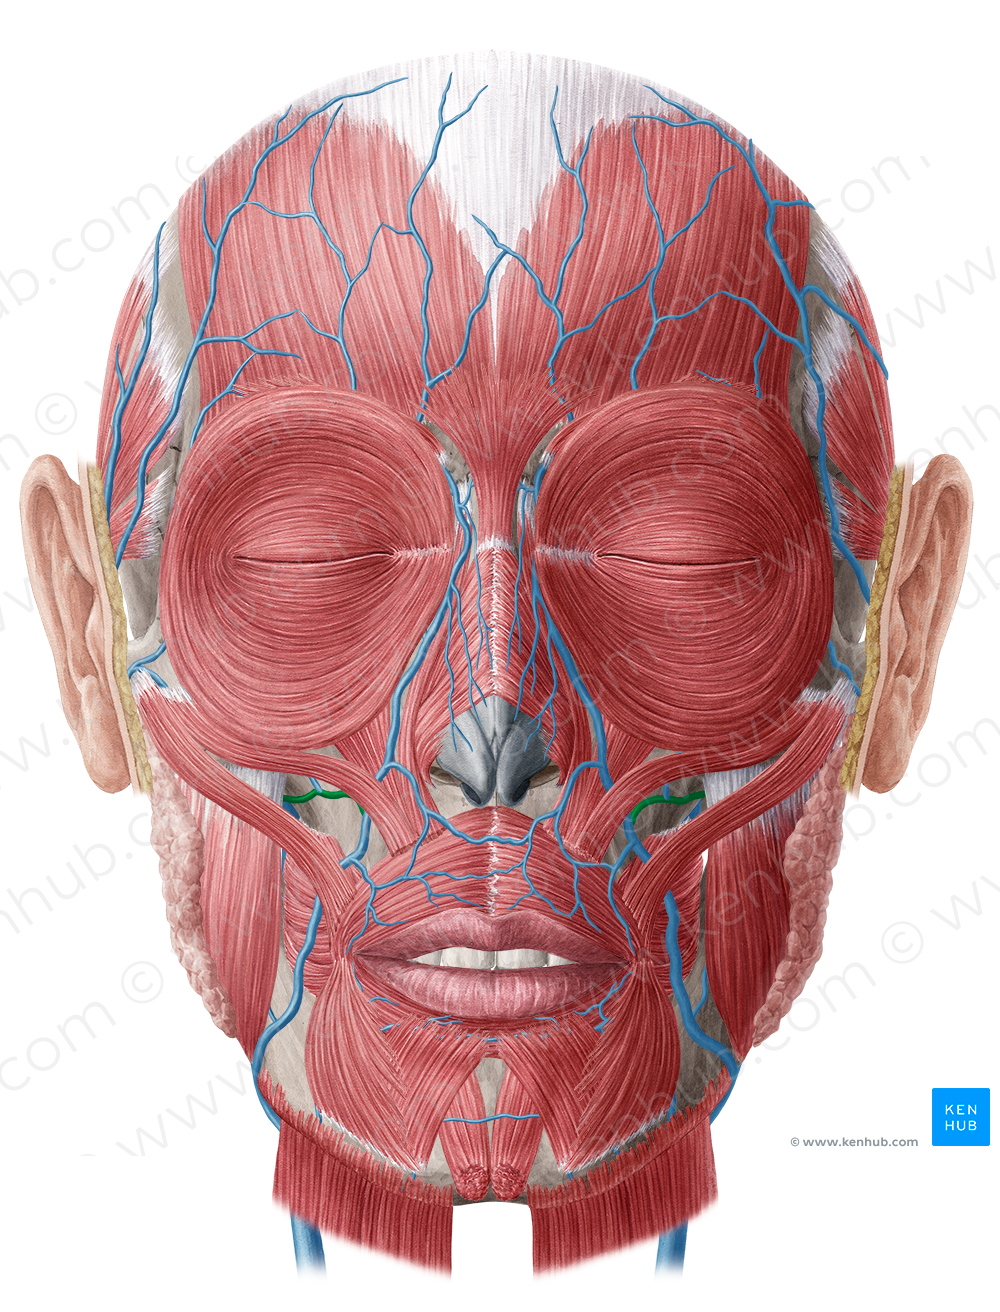 Deep facial vein (#10494)